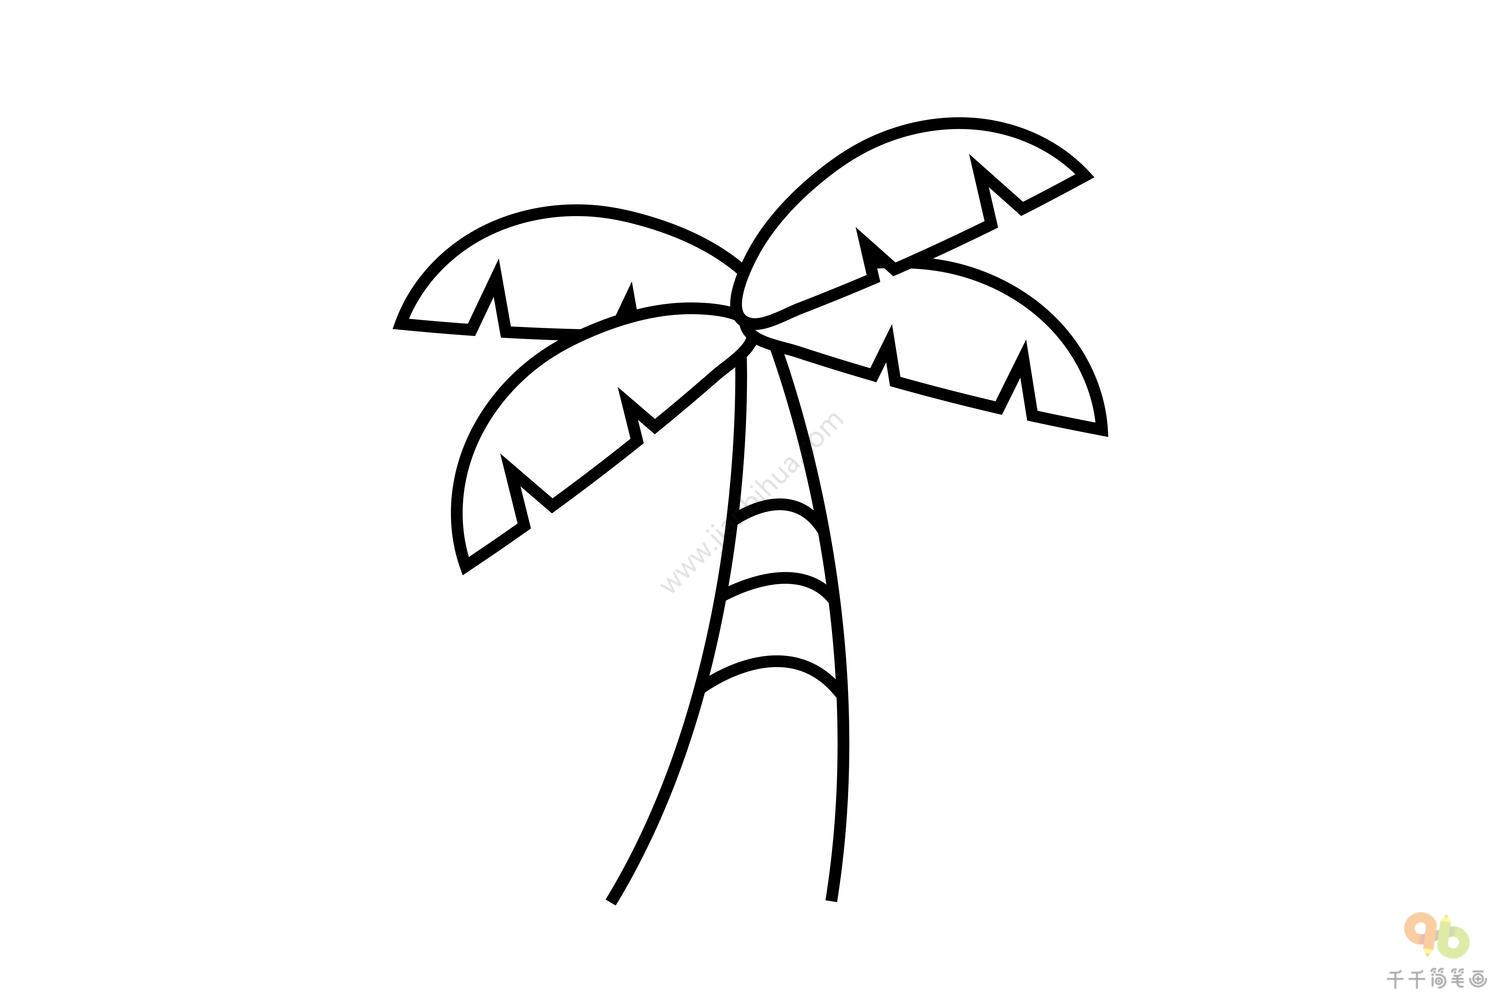 夏天的椰子树简笔画图片 - 制作系手工网